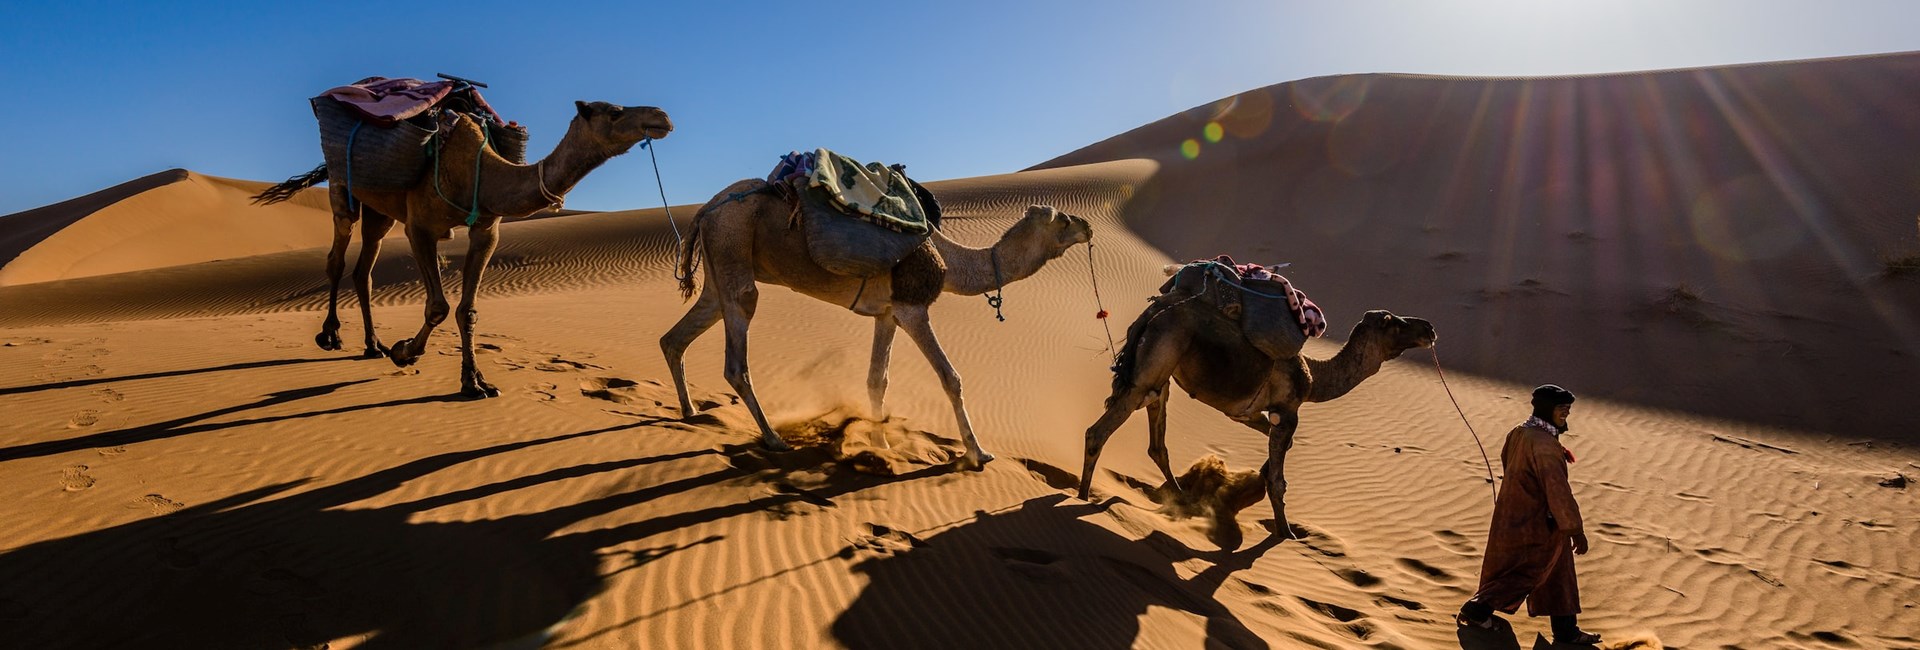 man leading 3 camels in camel train across desert in Arabia